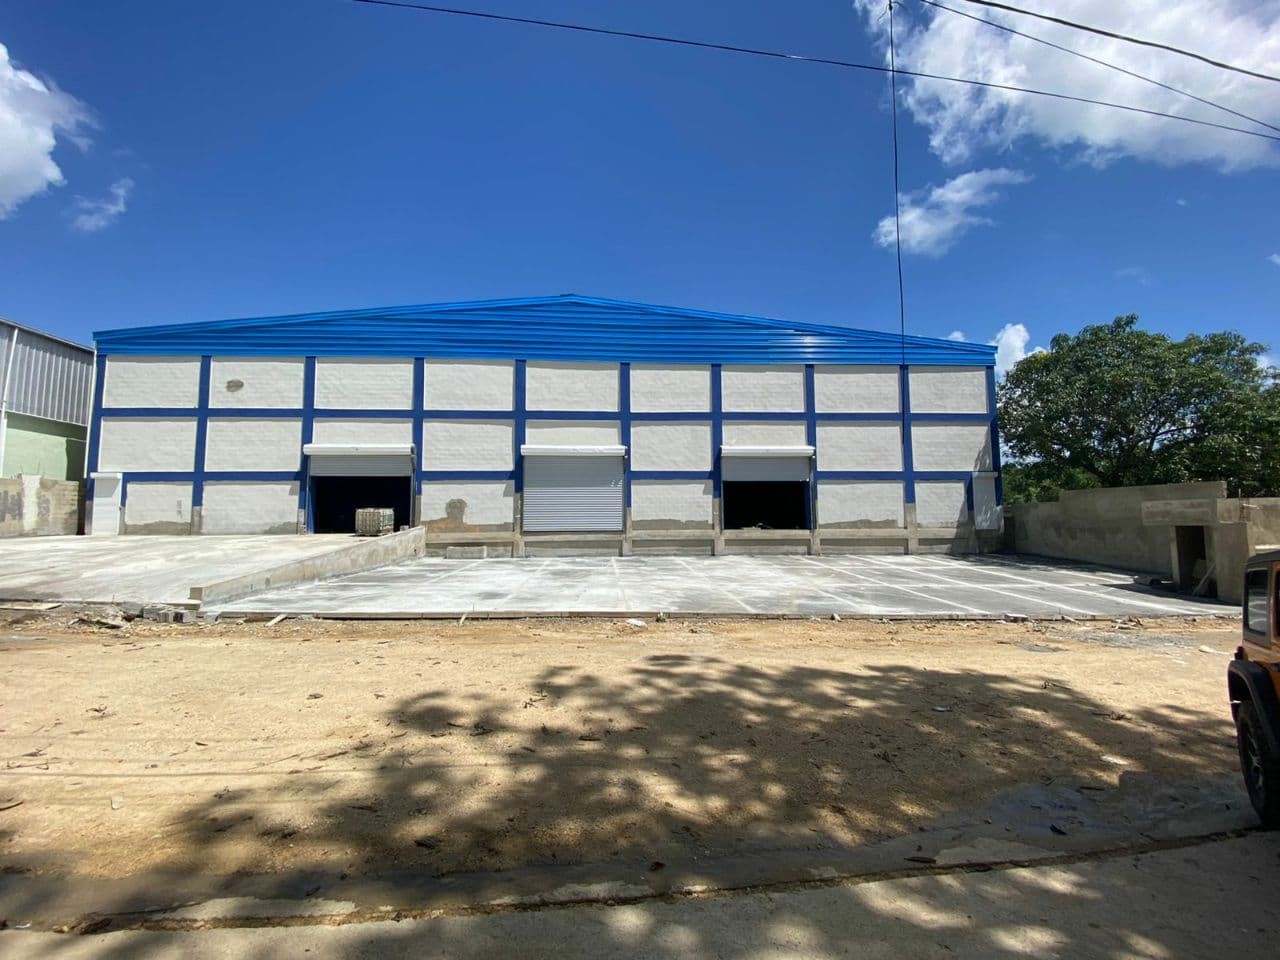 oficinas y locales comerciales - Nave Recién Construida en Alquiler en Cerros de Palmarejo en KM 16 y medio de La